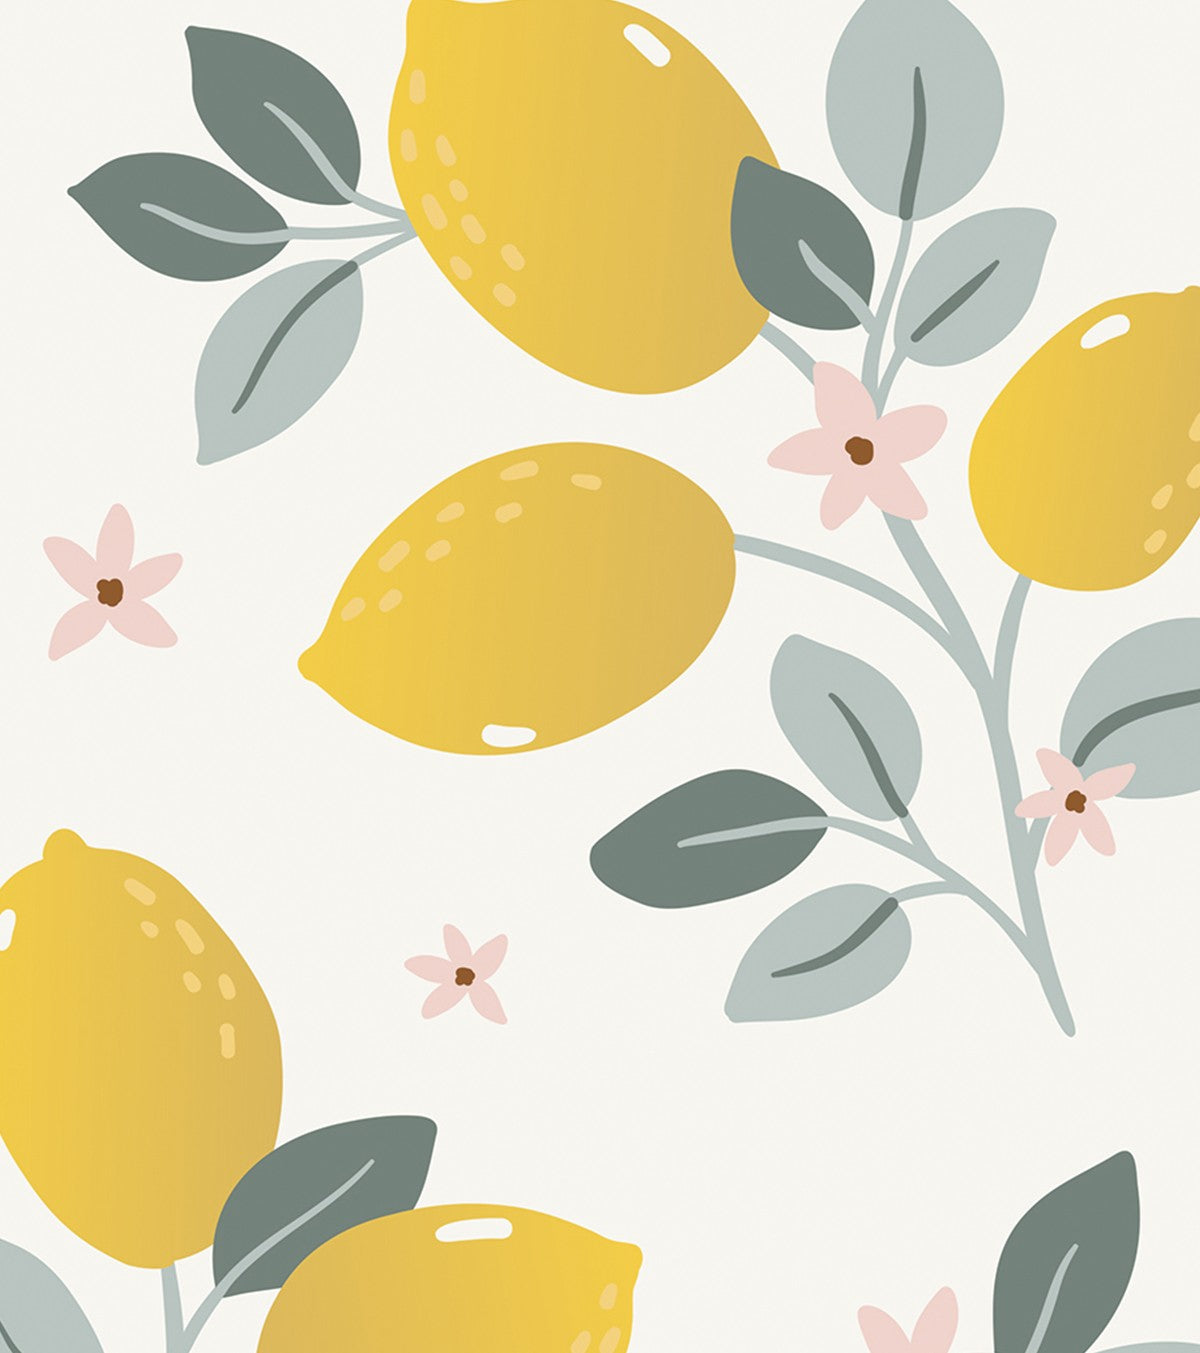 LOUISE - Children's poster - Lemons